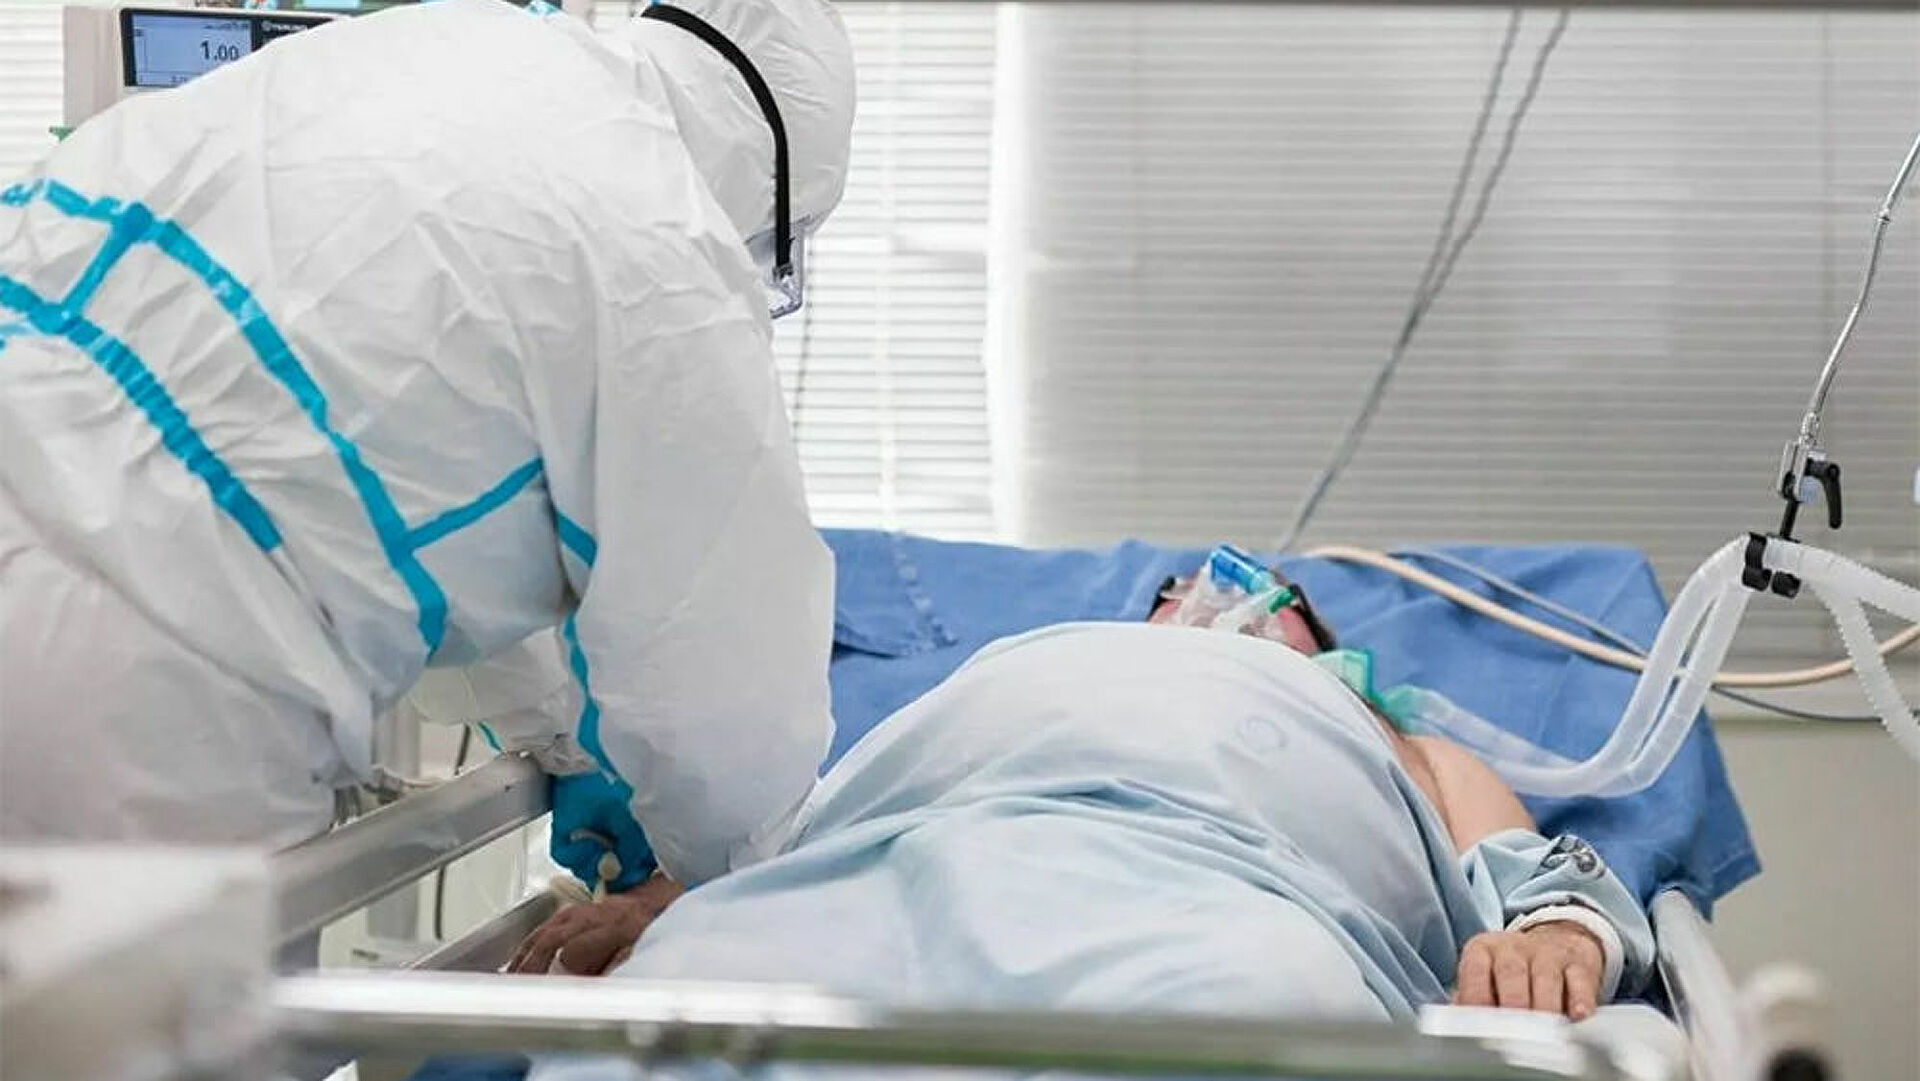 Այս պահին 122 հղի կին հոսպիտալացված է Covid-ով. 53-ը թթվածնային կախյալ են